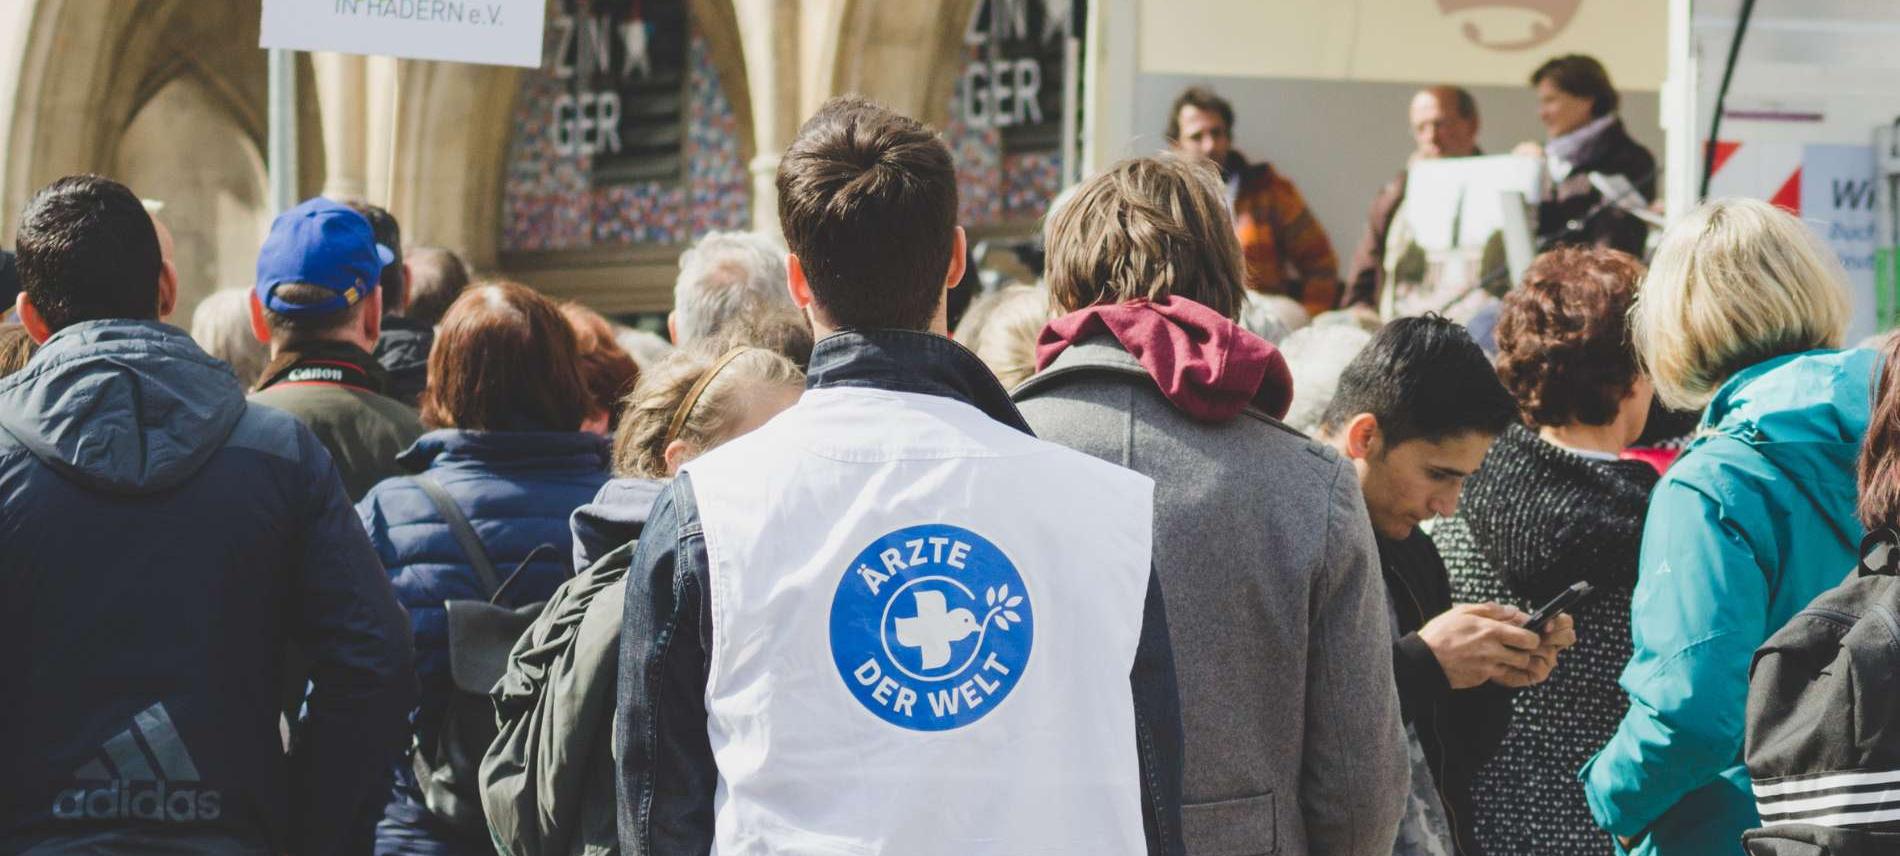 Ärzte der Welt demonstriert am Freitag in München für den Klimaschutz. Foto: Ärzte der Welt